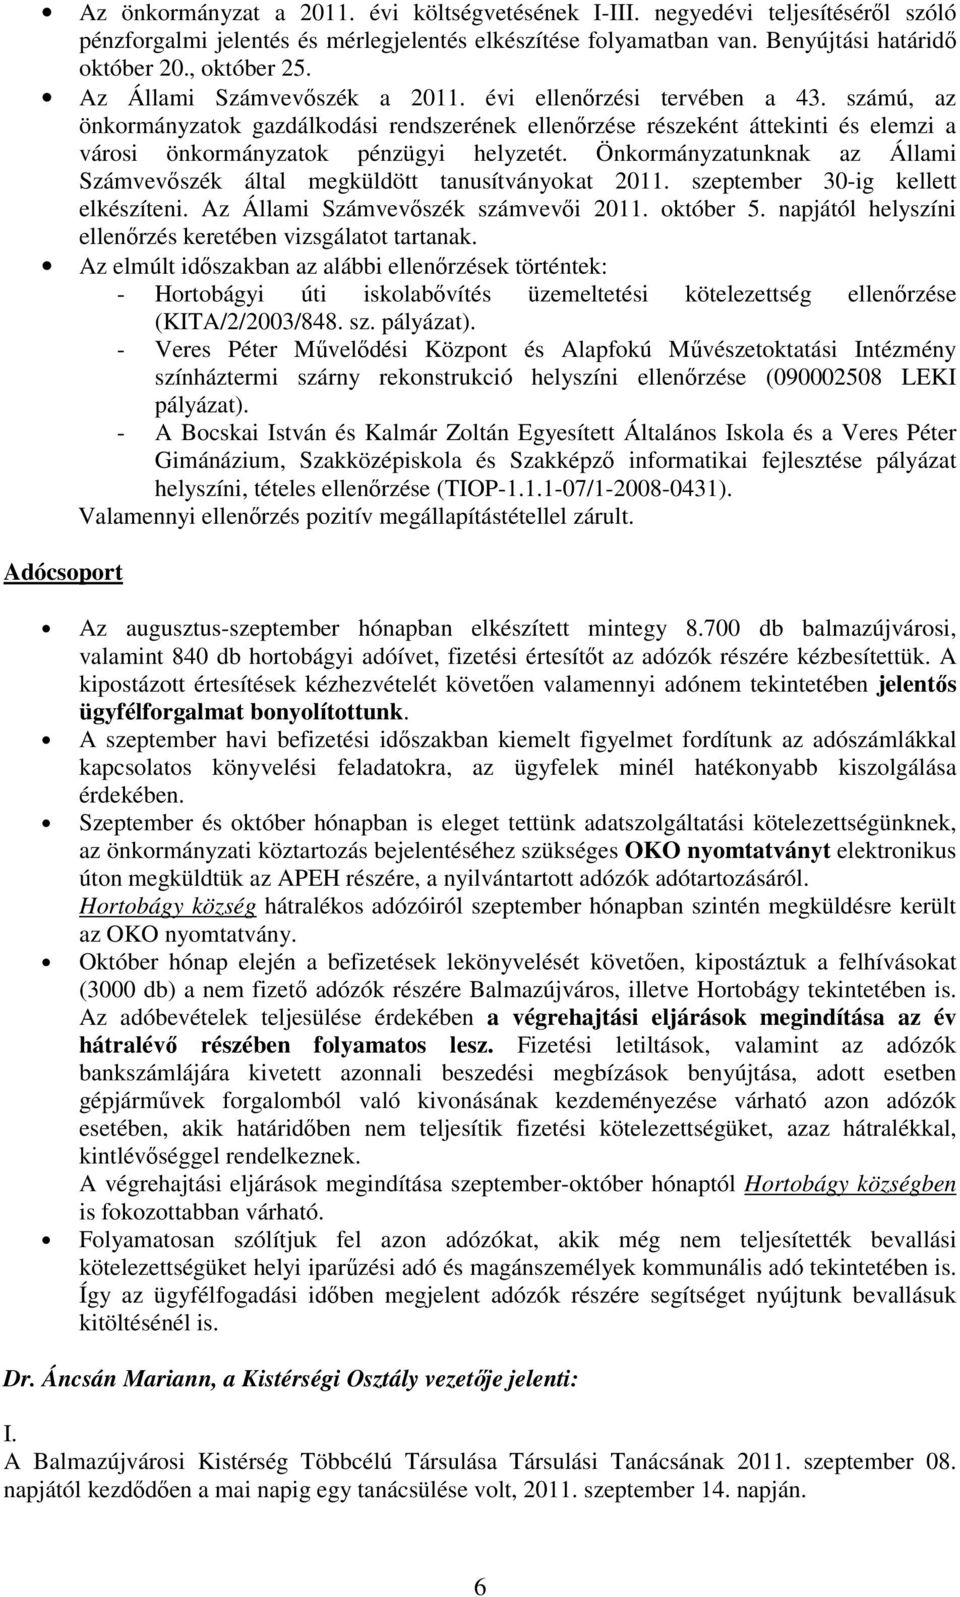 Önkormányzatunknak az Állami Számvevıszék által megküldött tanusítványokat 2011. szeptember 30-ig kellett elkészíteni. Az Állami Számvevıszék számvevıi 2011. október 5.